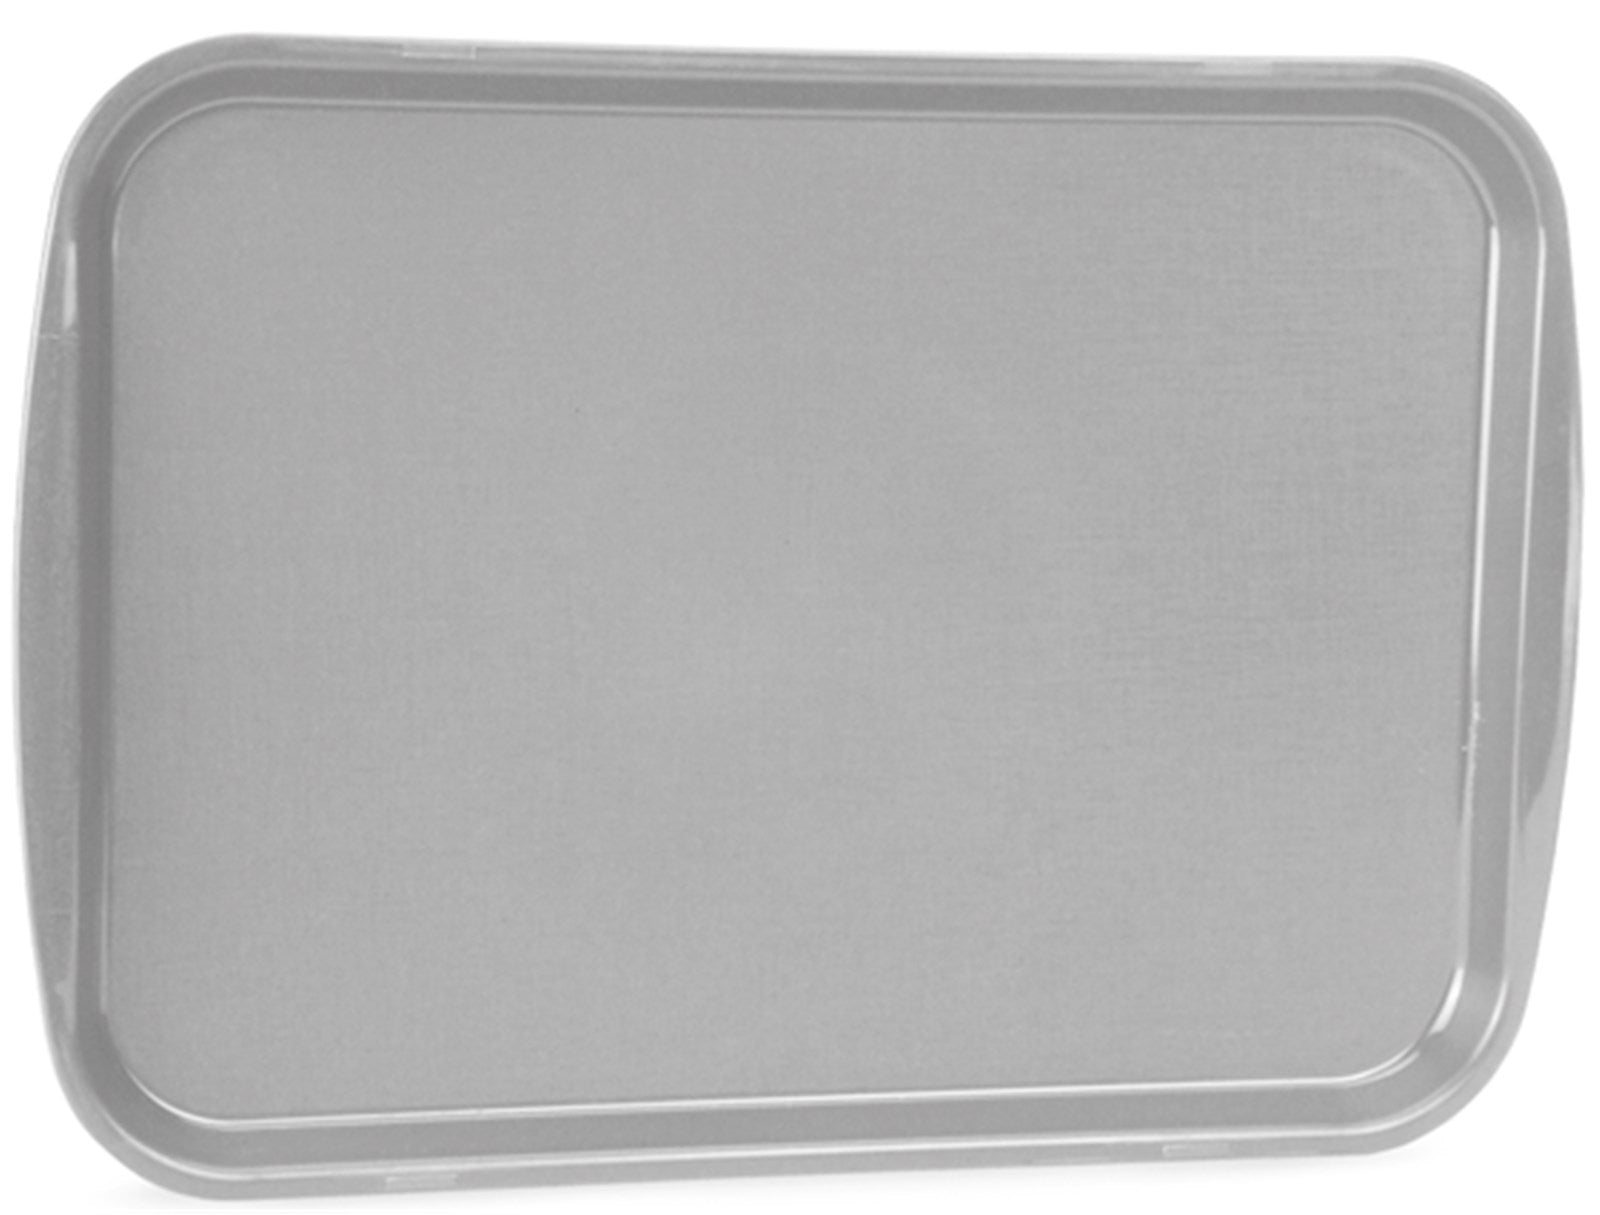 Fast Food Tablett grau 35.6 x 45.7cm in Grau präsentiert im Onlineshop von KAQTU Design AG. Tablett ist von Vollrath